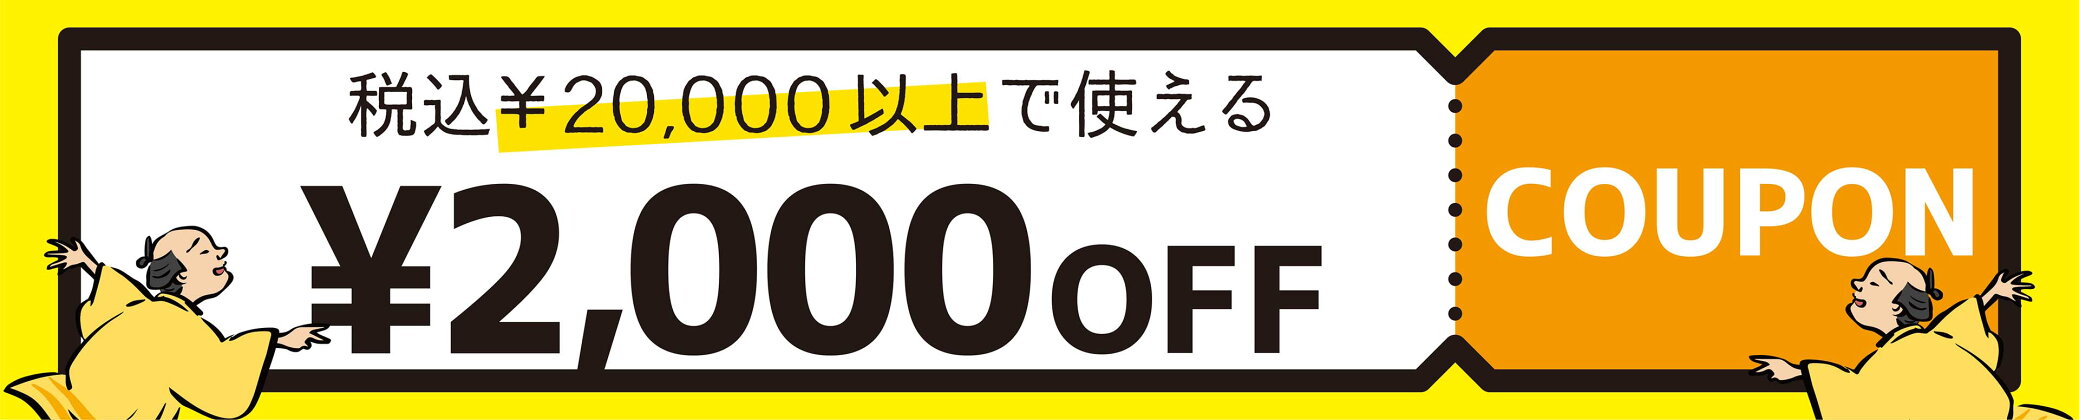 2000円引きクーポン